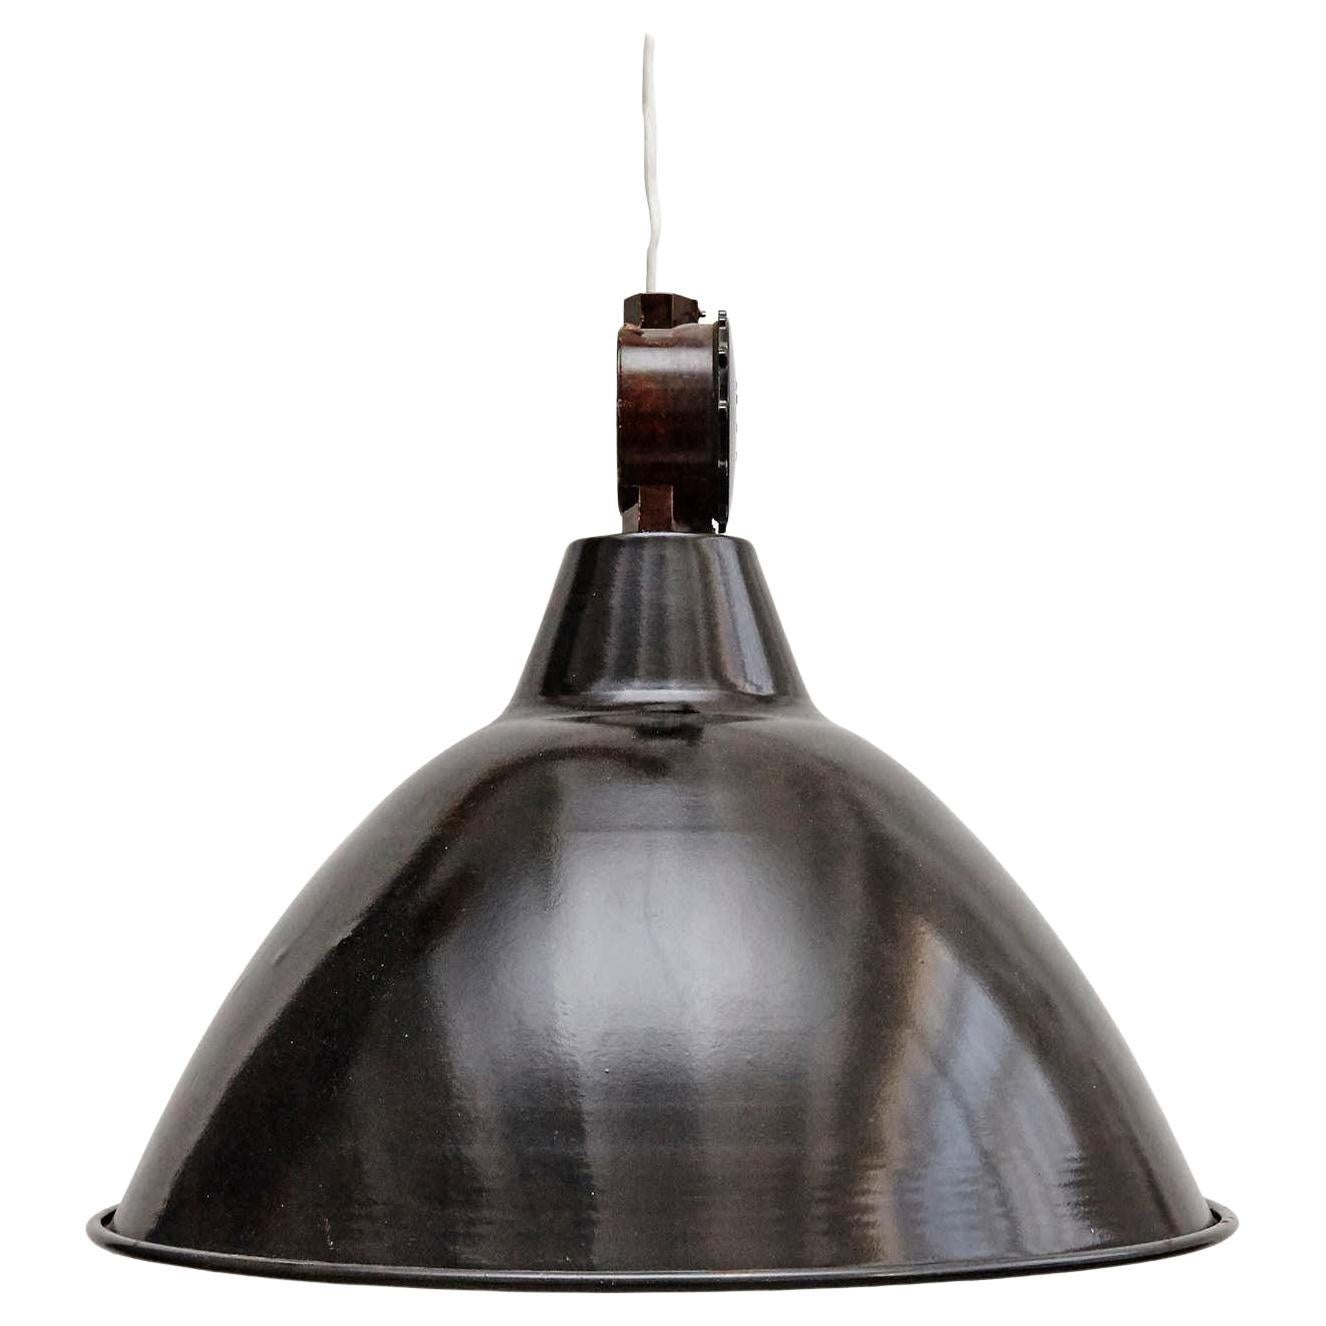 Lampe industrielle française, datant d'environ 1950